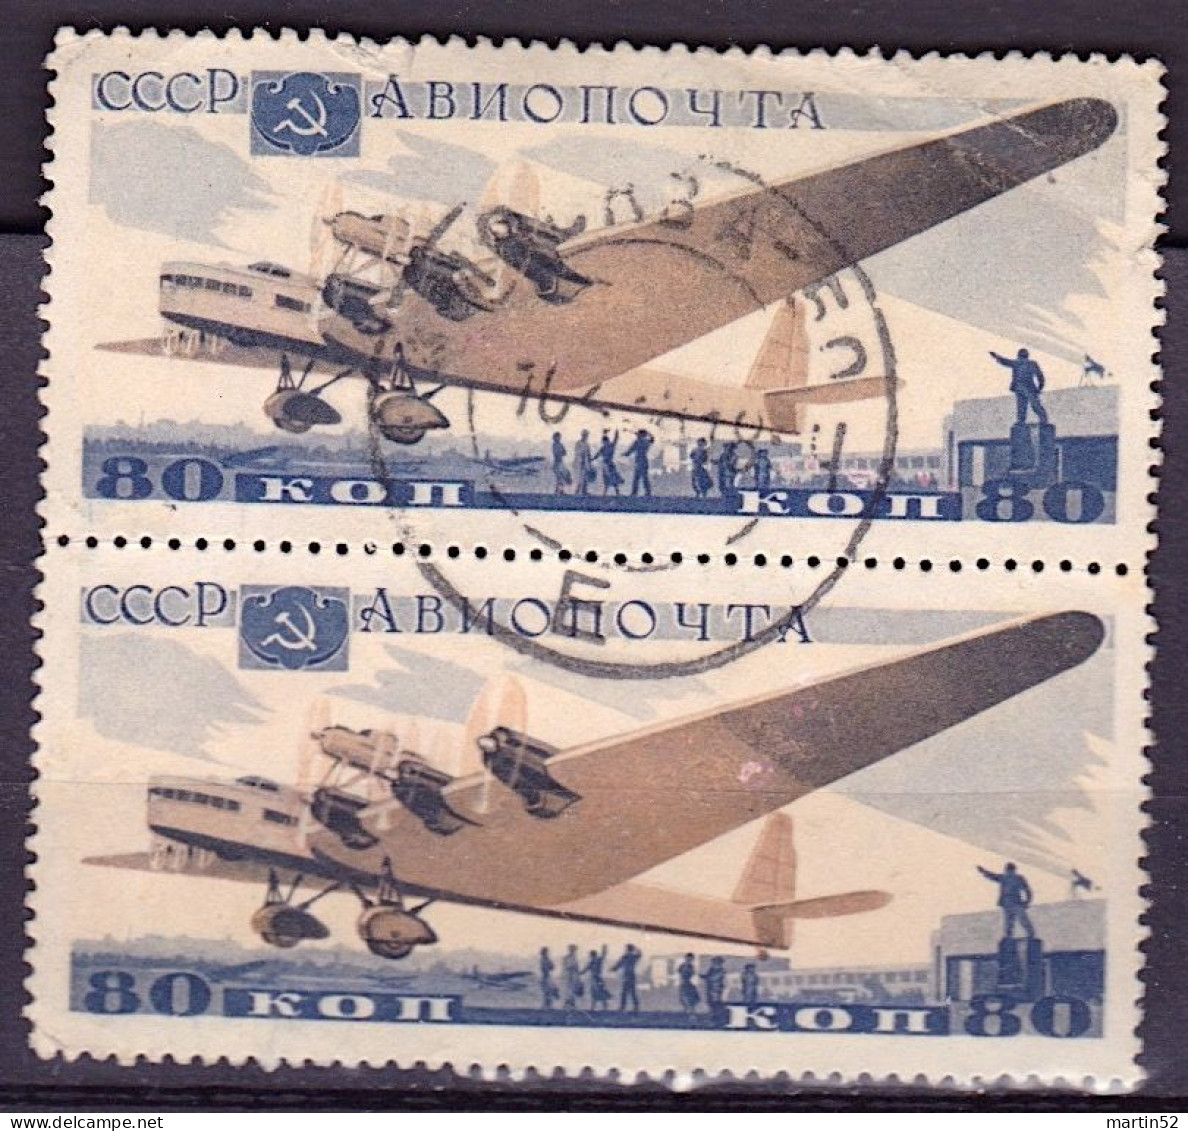 Sowiet-Union CCCP Russie URSS 1937: Antonov ANT-20 (80 Kop) Michel-N° 576 Im Paar Gestempelt Obliterée Used - Usati